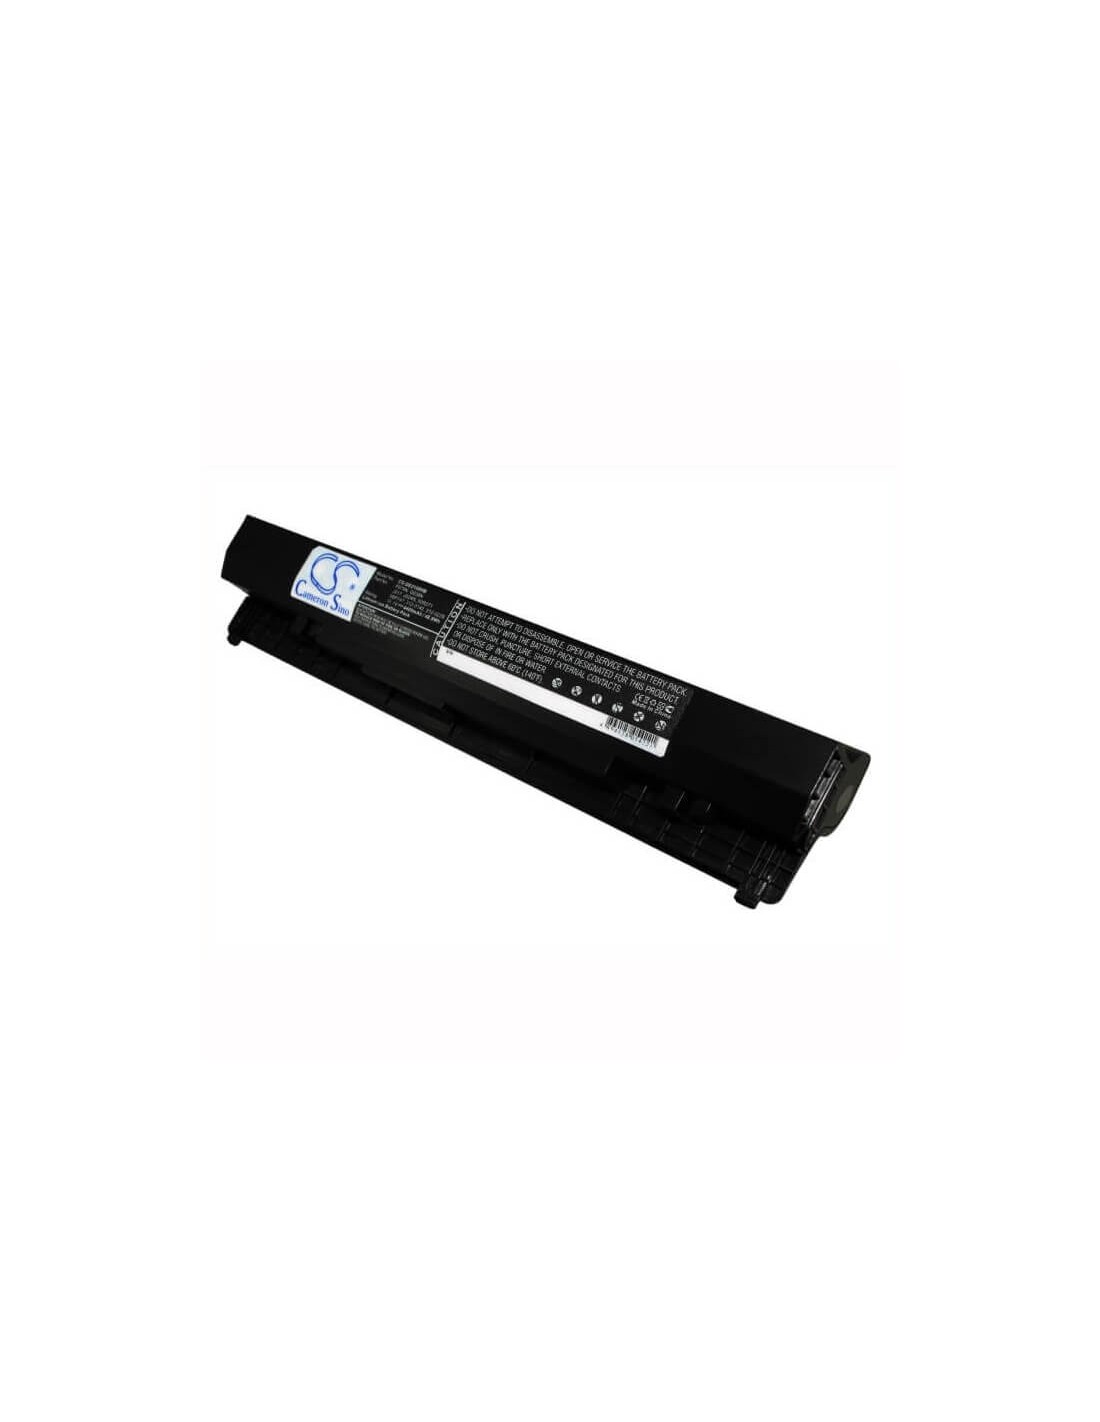 Black Battery for Dell Latitude 2100, Latitude 2110, Latitude 2120 11.1V, 4400mAh - 48.84Wh